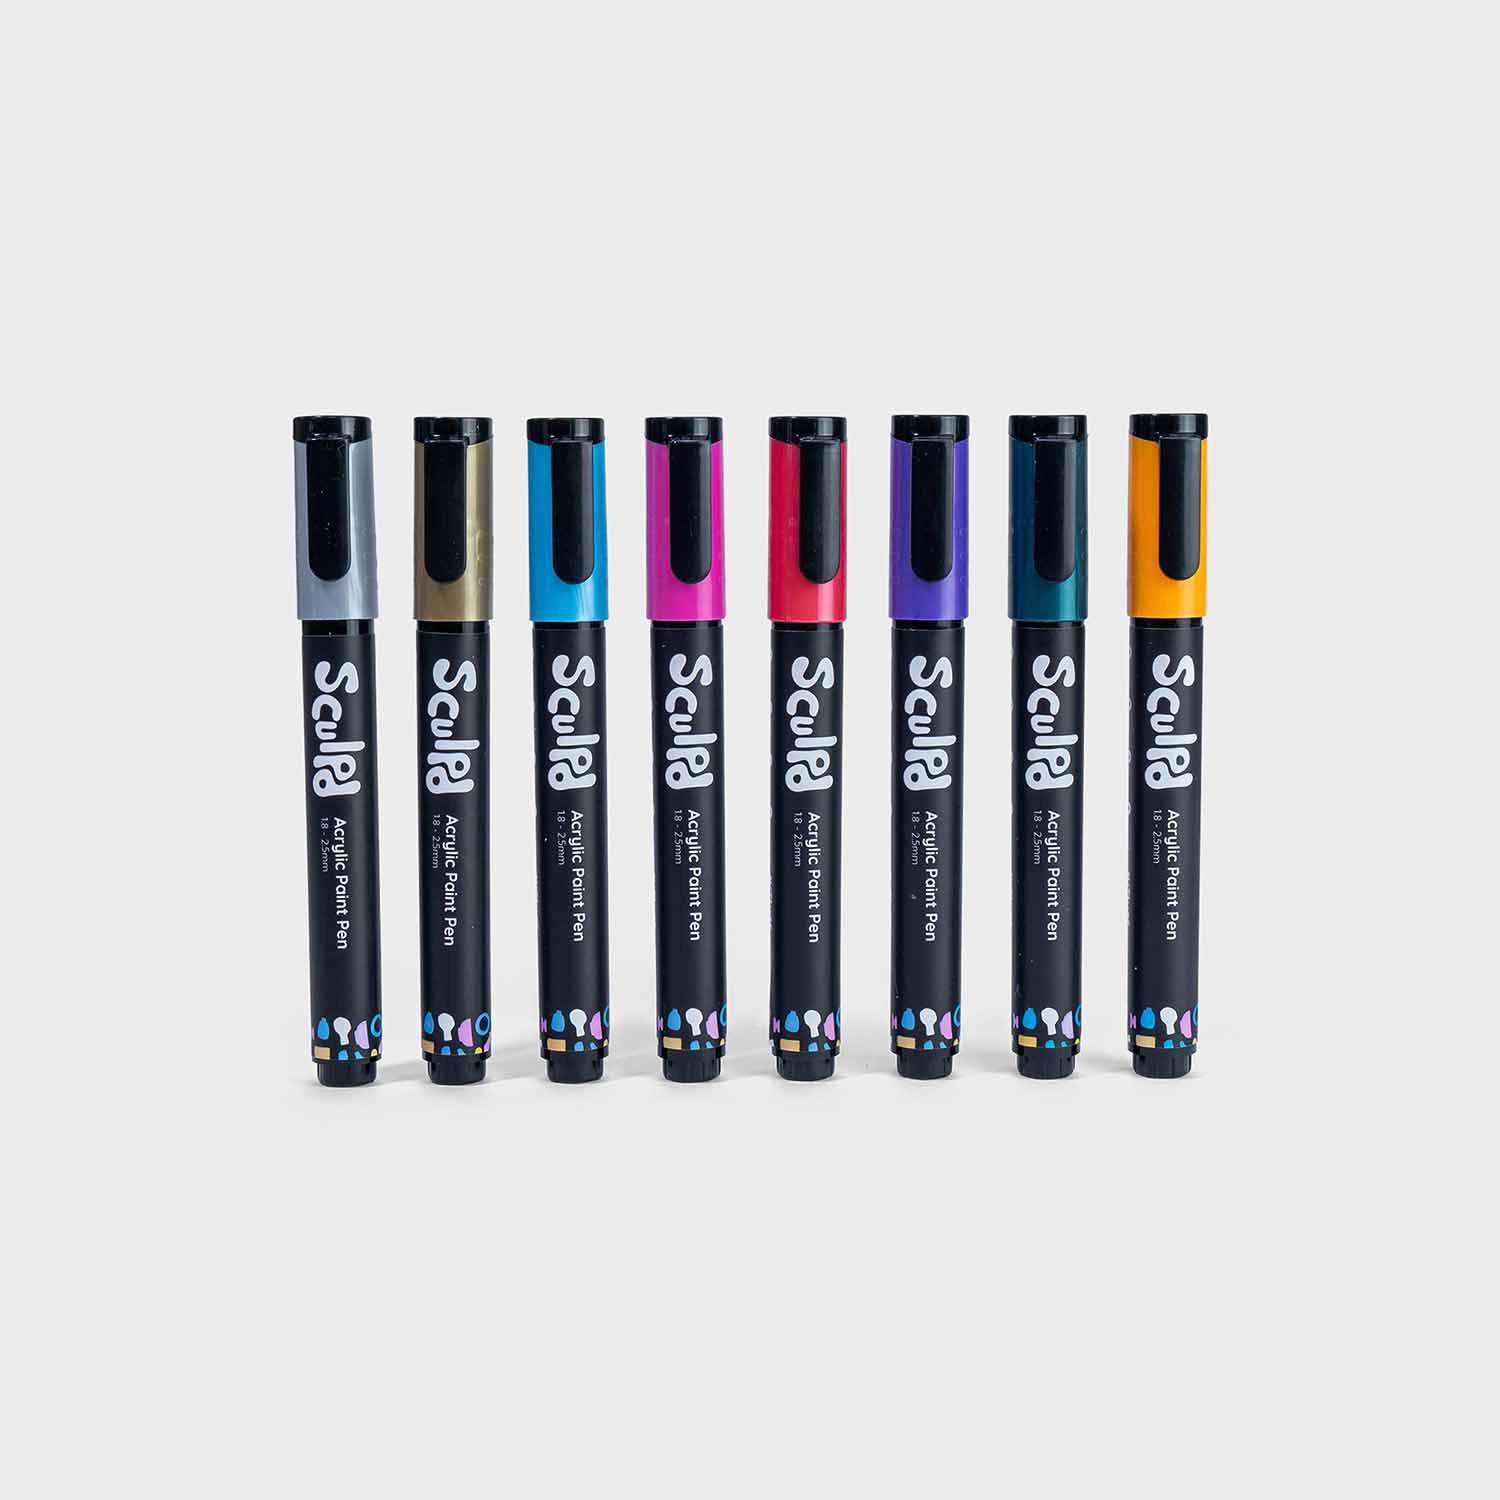 BEMLP Waterproof metallic paint marker pens with fluorescence